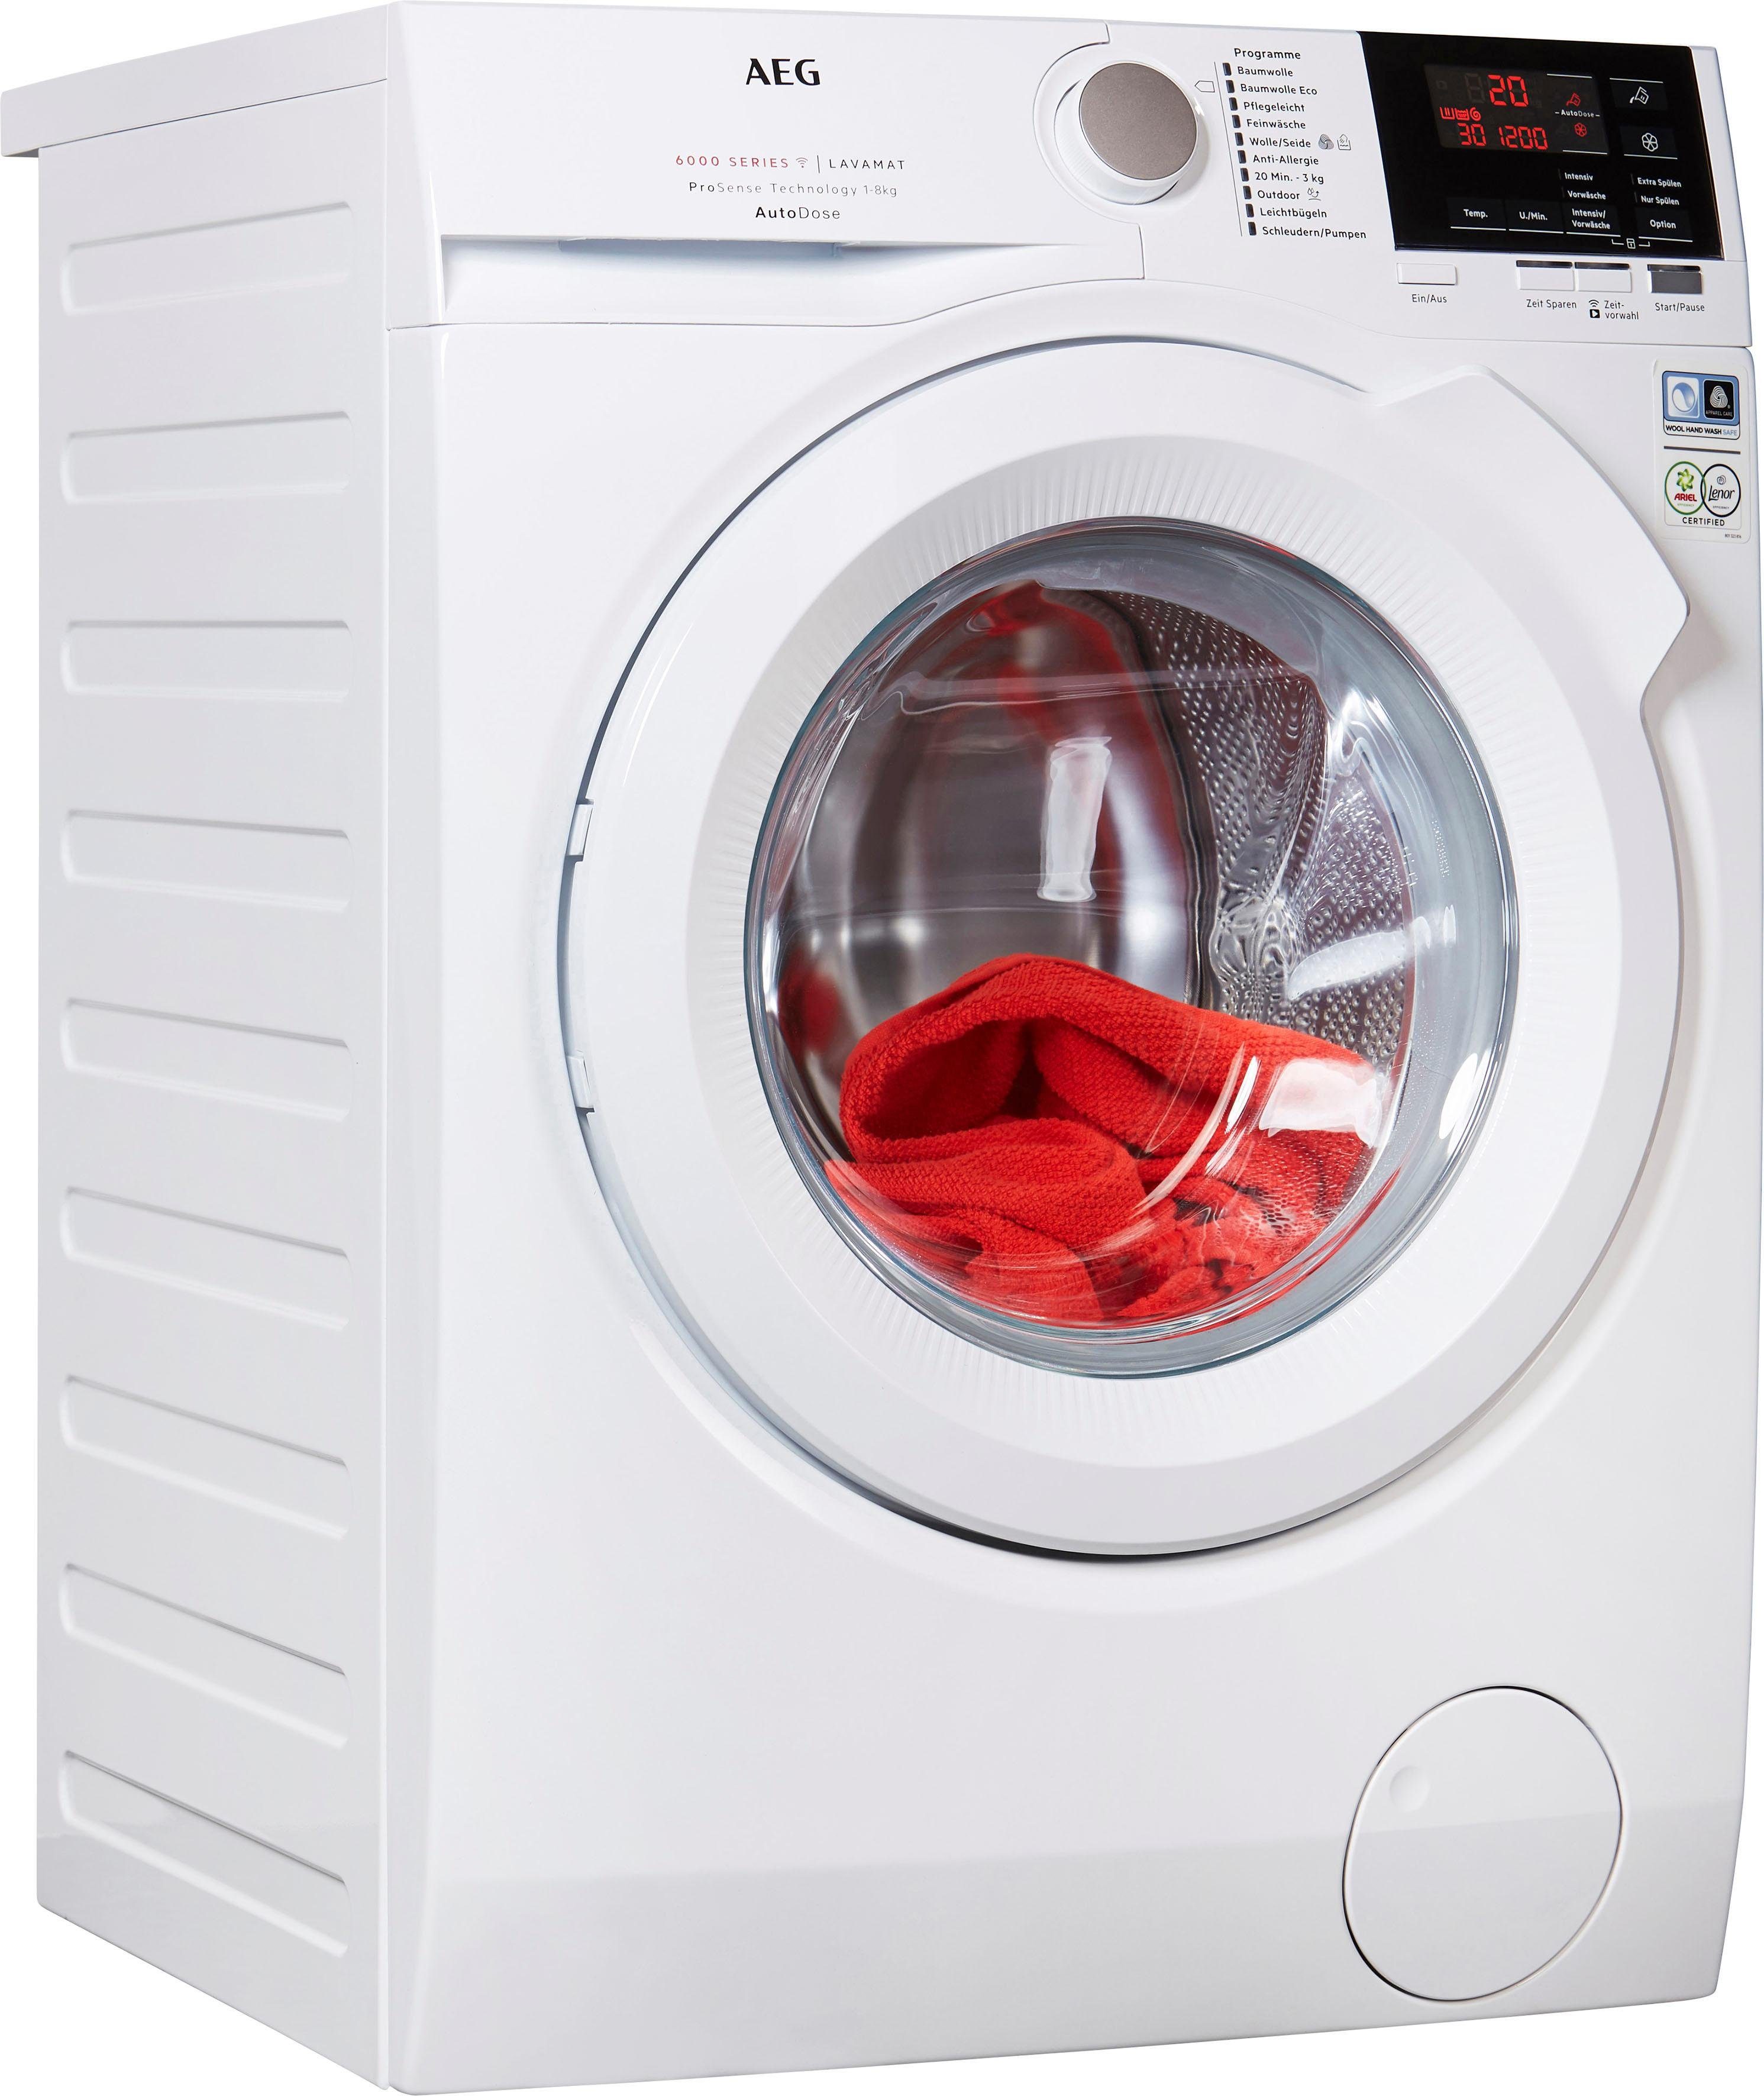 AEG Waschmaschine Serie 6000 L6FB68480, 8 kg, 1400 U/min, mit AutoDose &  WiFi Steuerung online kaufen | OTTO